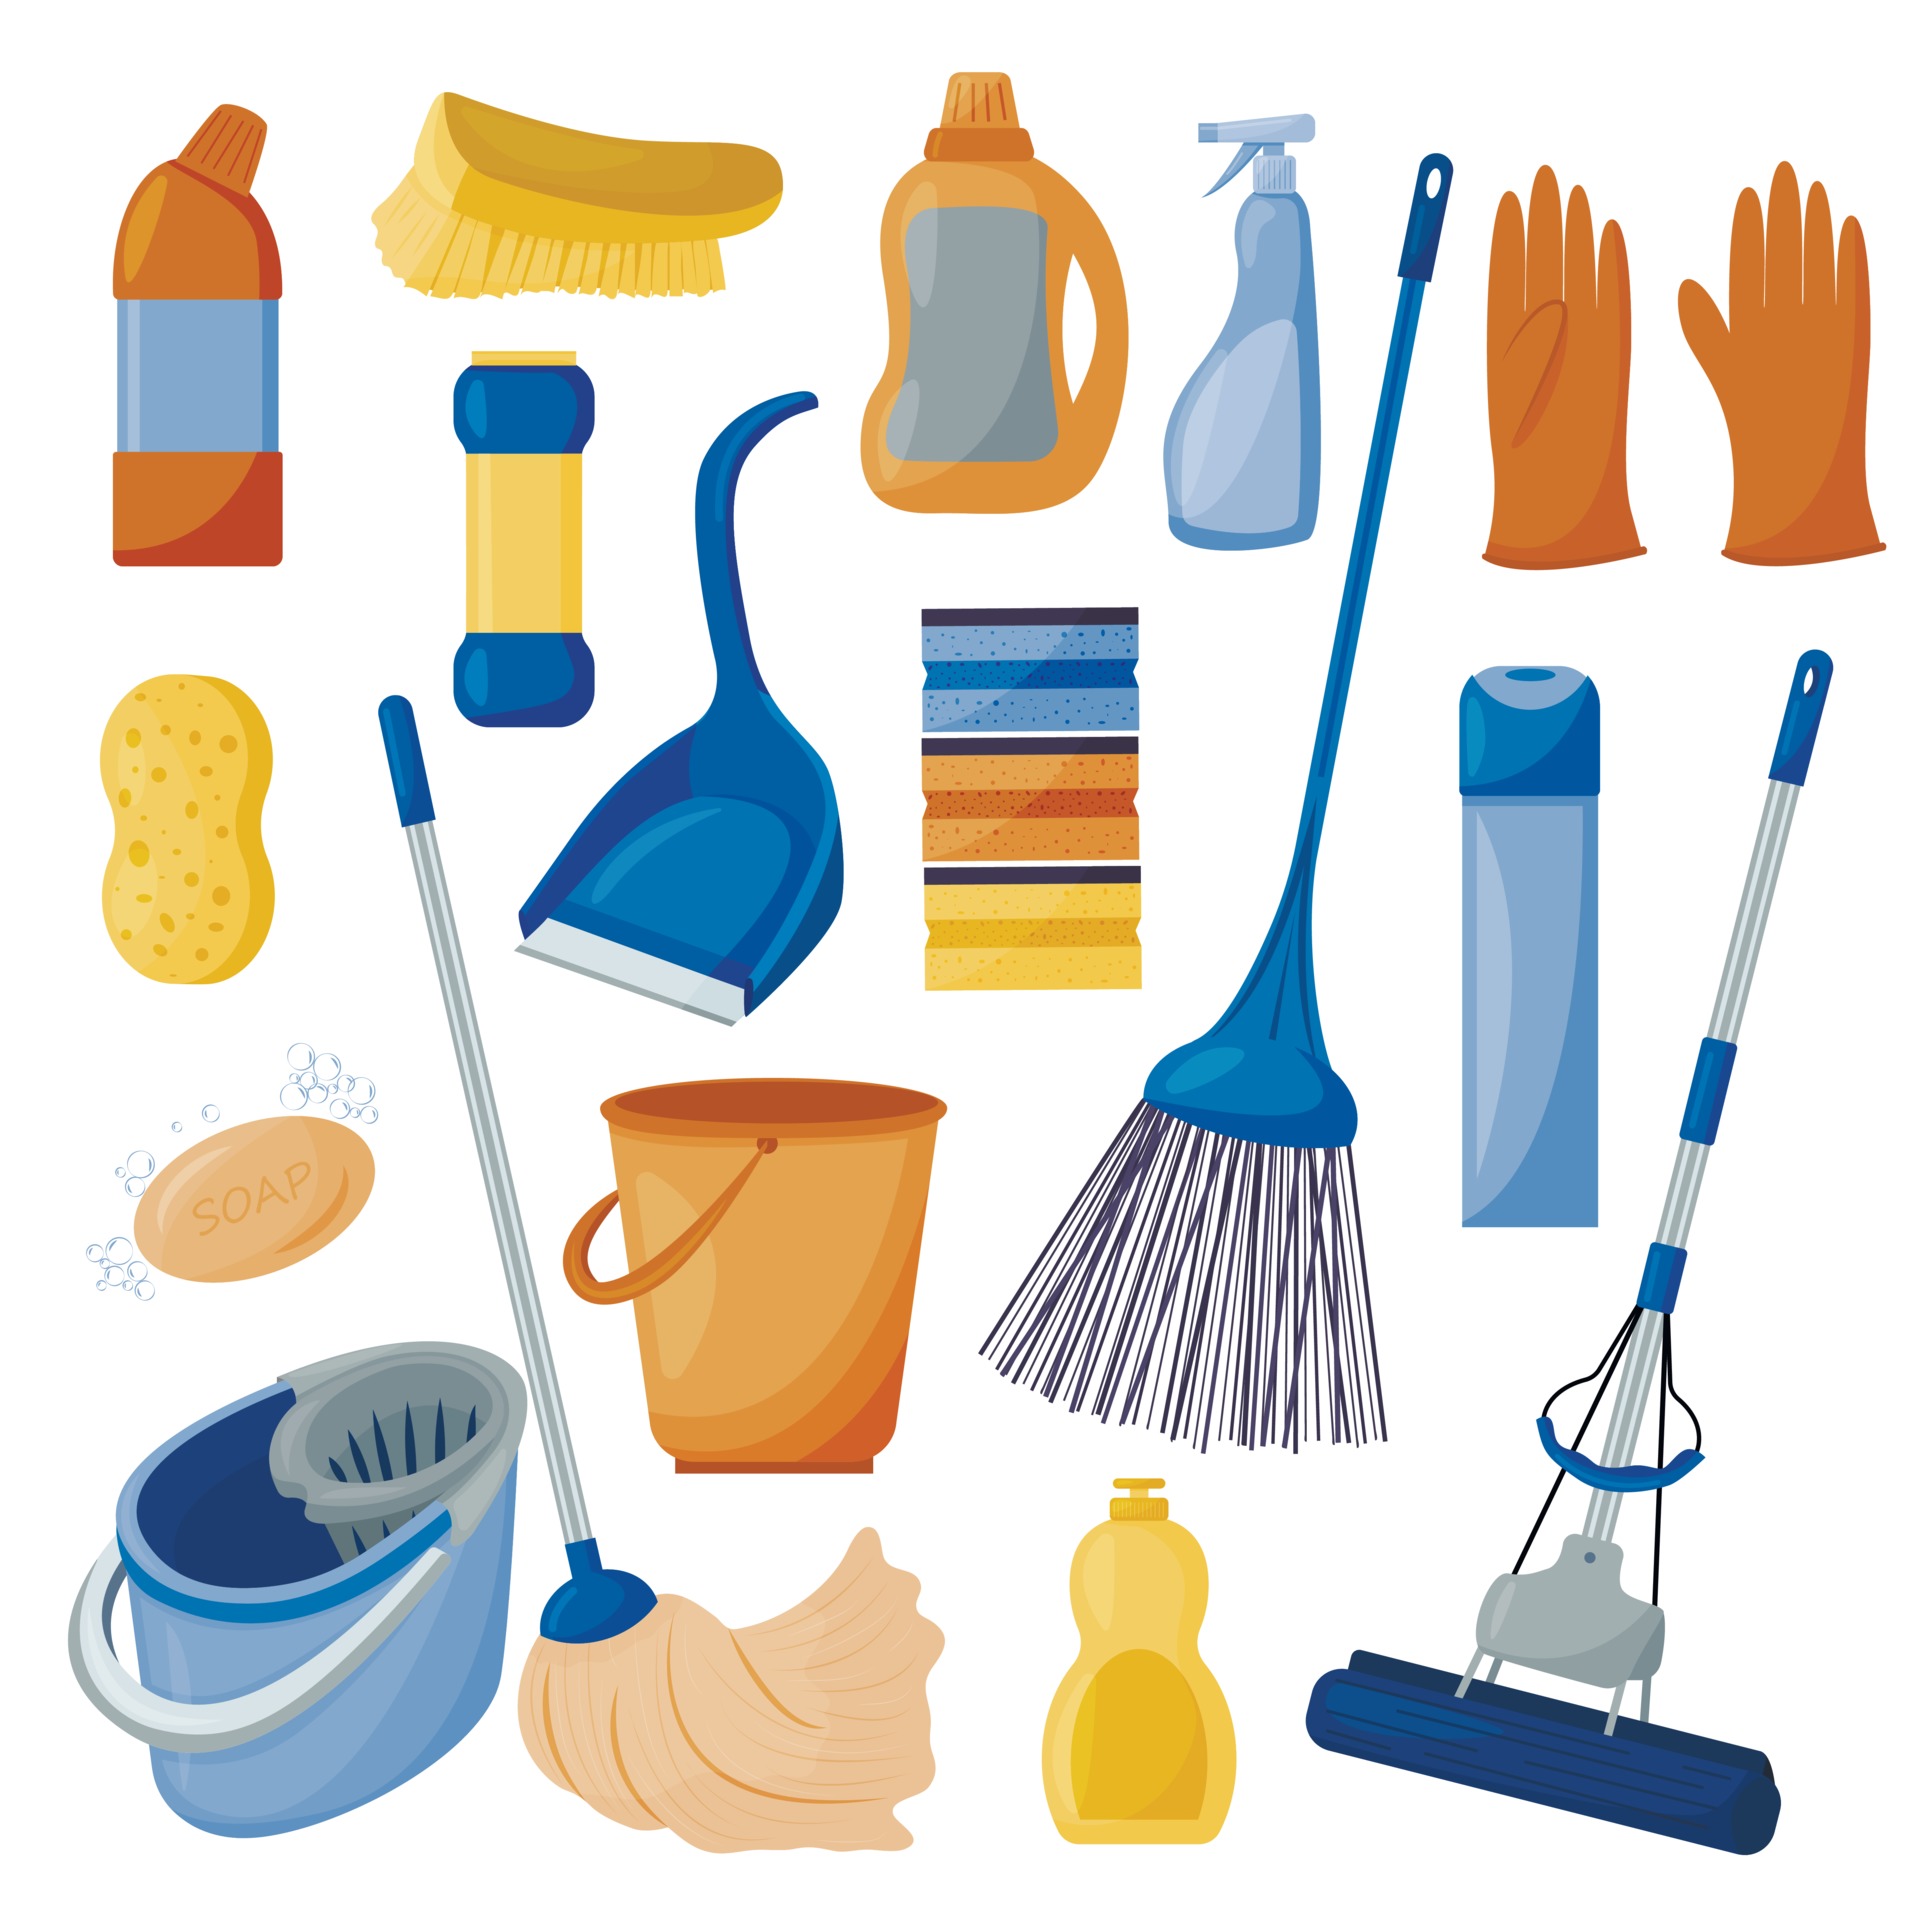 nettoyage. un ensemble d'outils pour nettoyer la maison, isolé sur